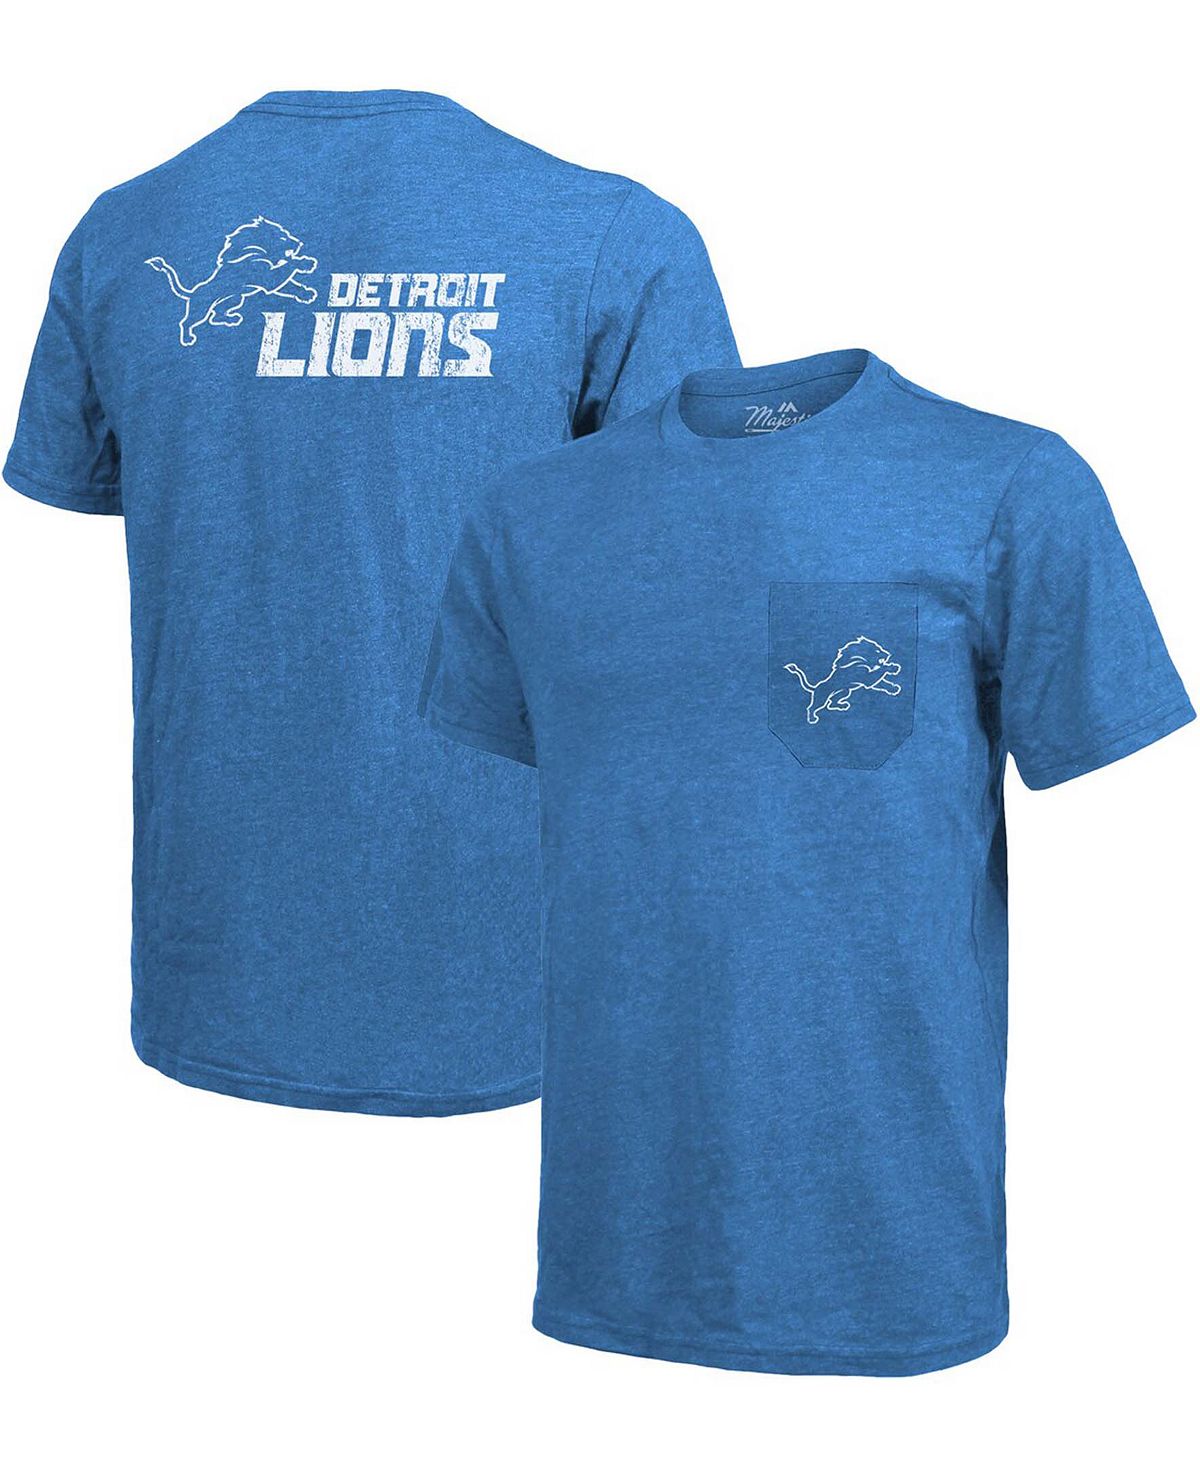 Футболка detroit lions tri-blend pocket - синий Majestic, синий футболка с карманами tri blend arizona cardinals threads cardinal majestic